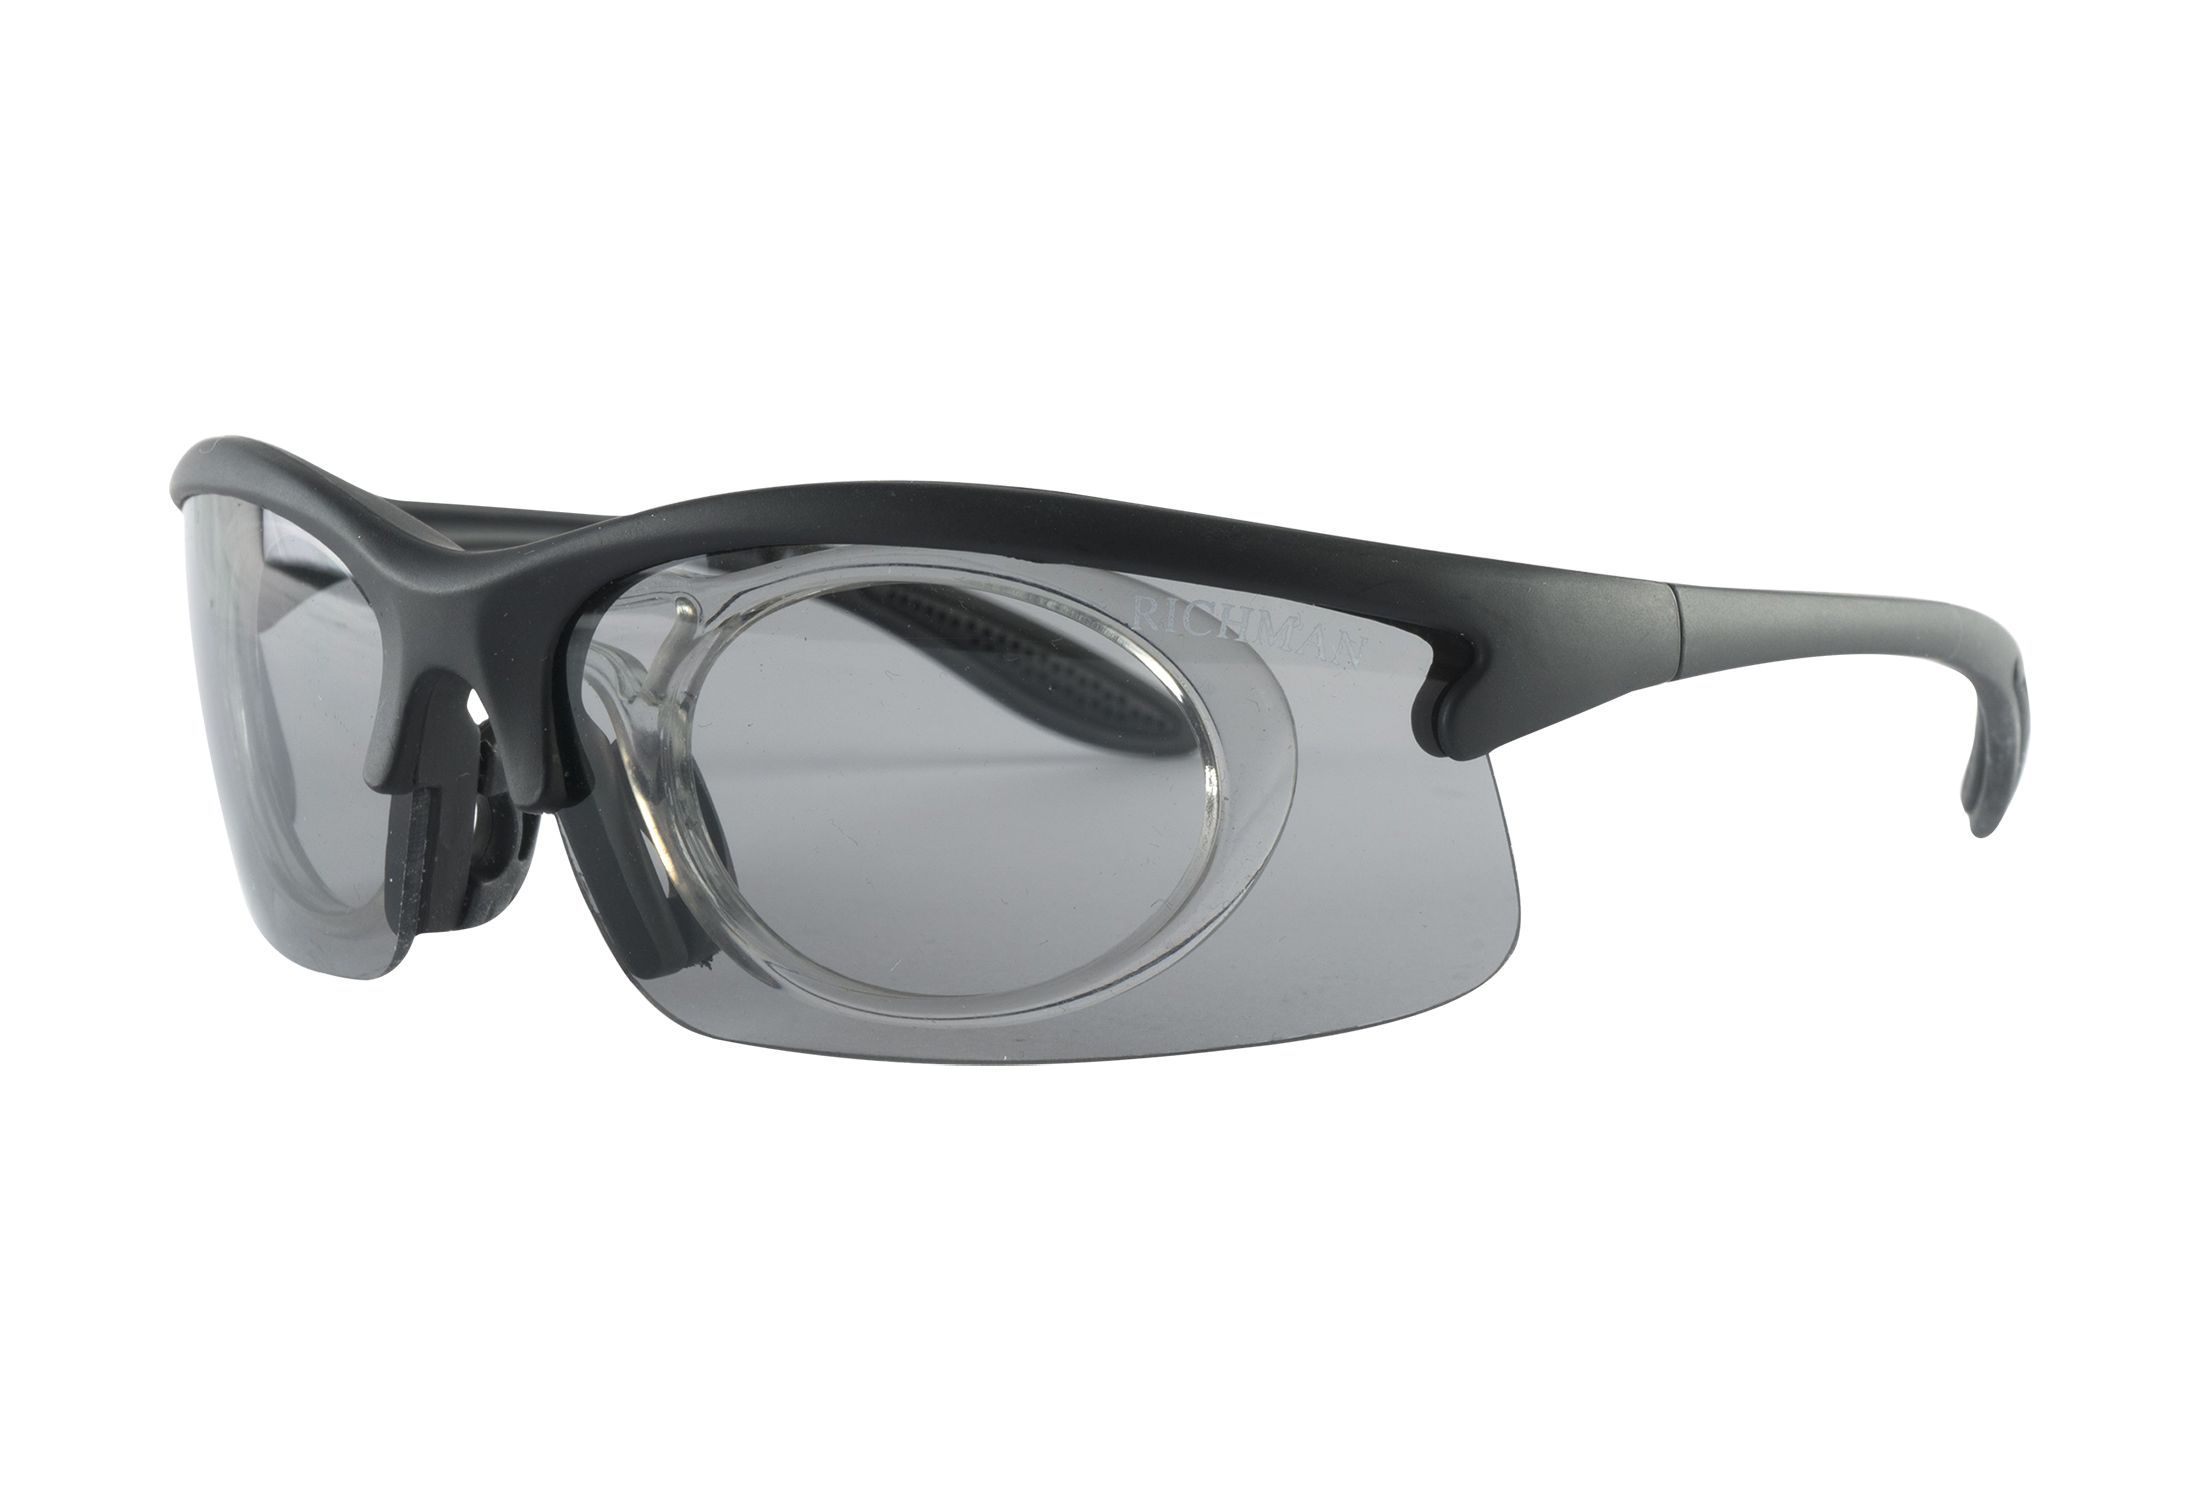 Sportsbriller med styrke fra eo Protect - Rebellion - Svart